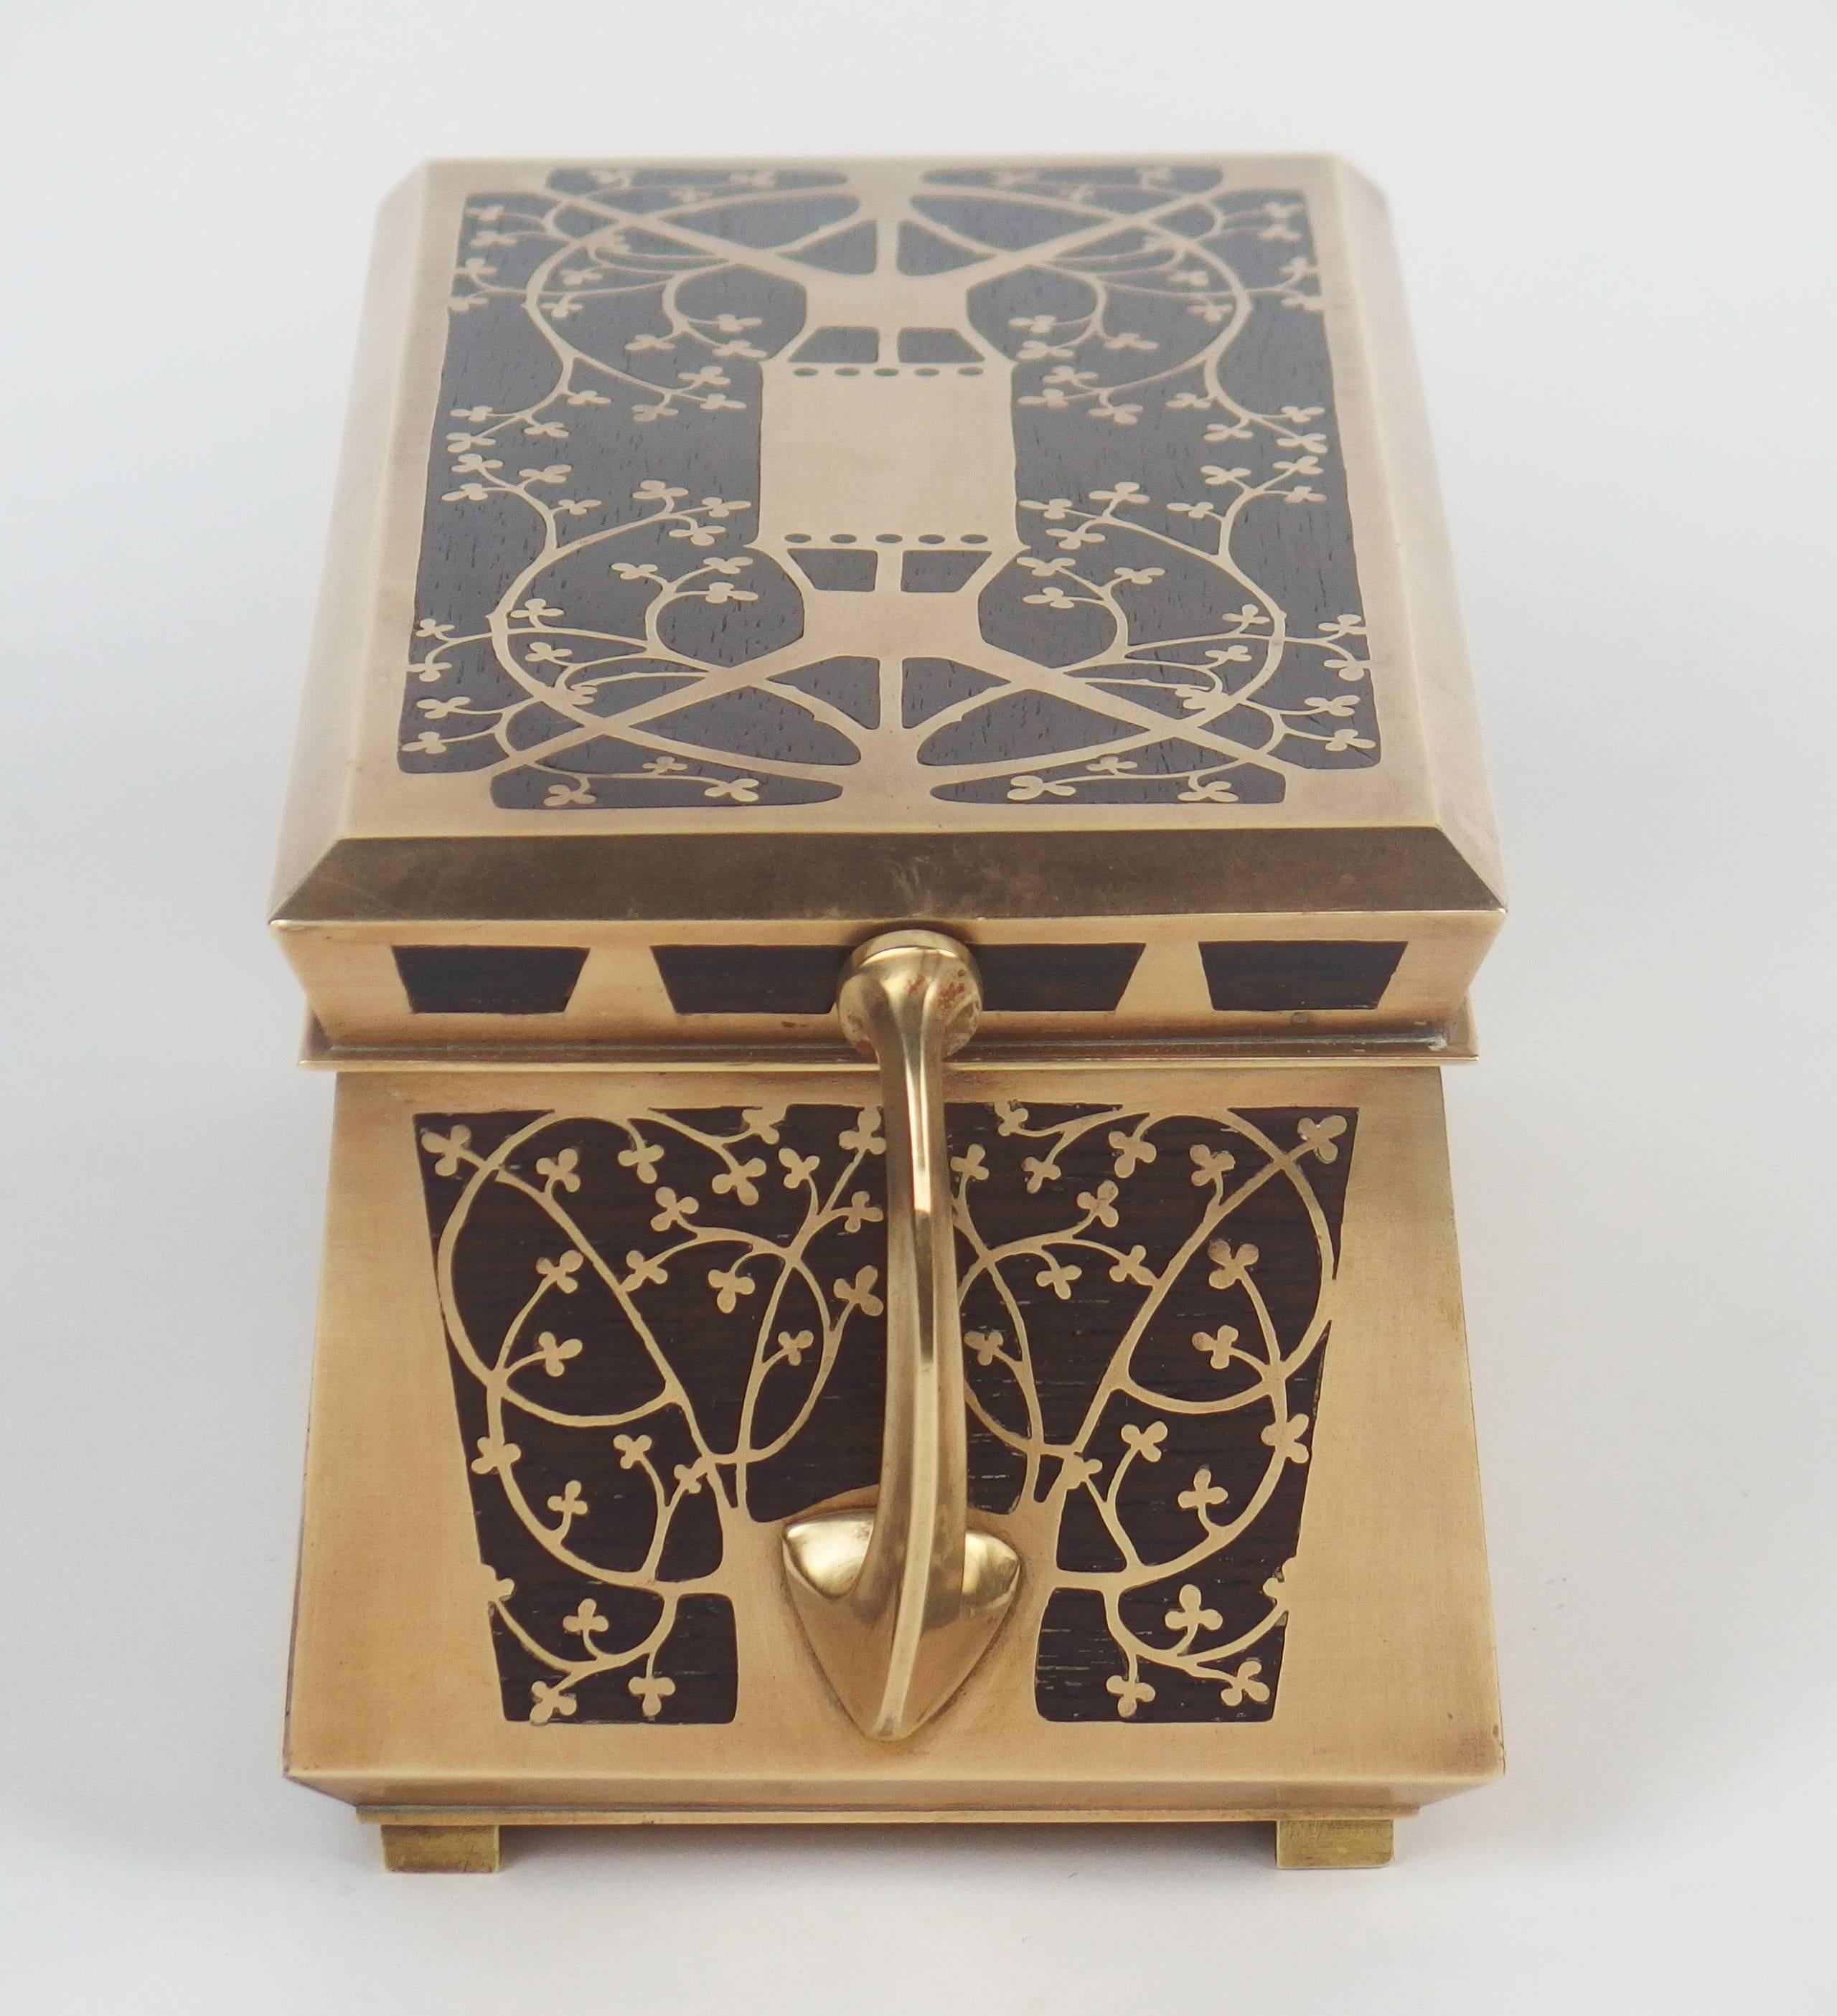 German Jugendstil Jewelry Box by Erhard & Sohne